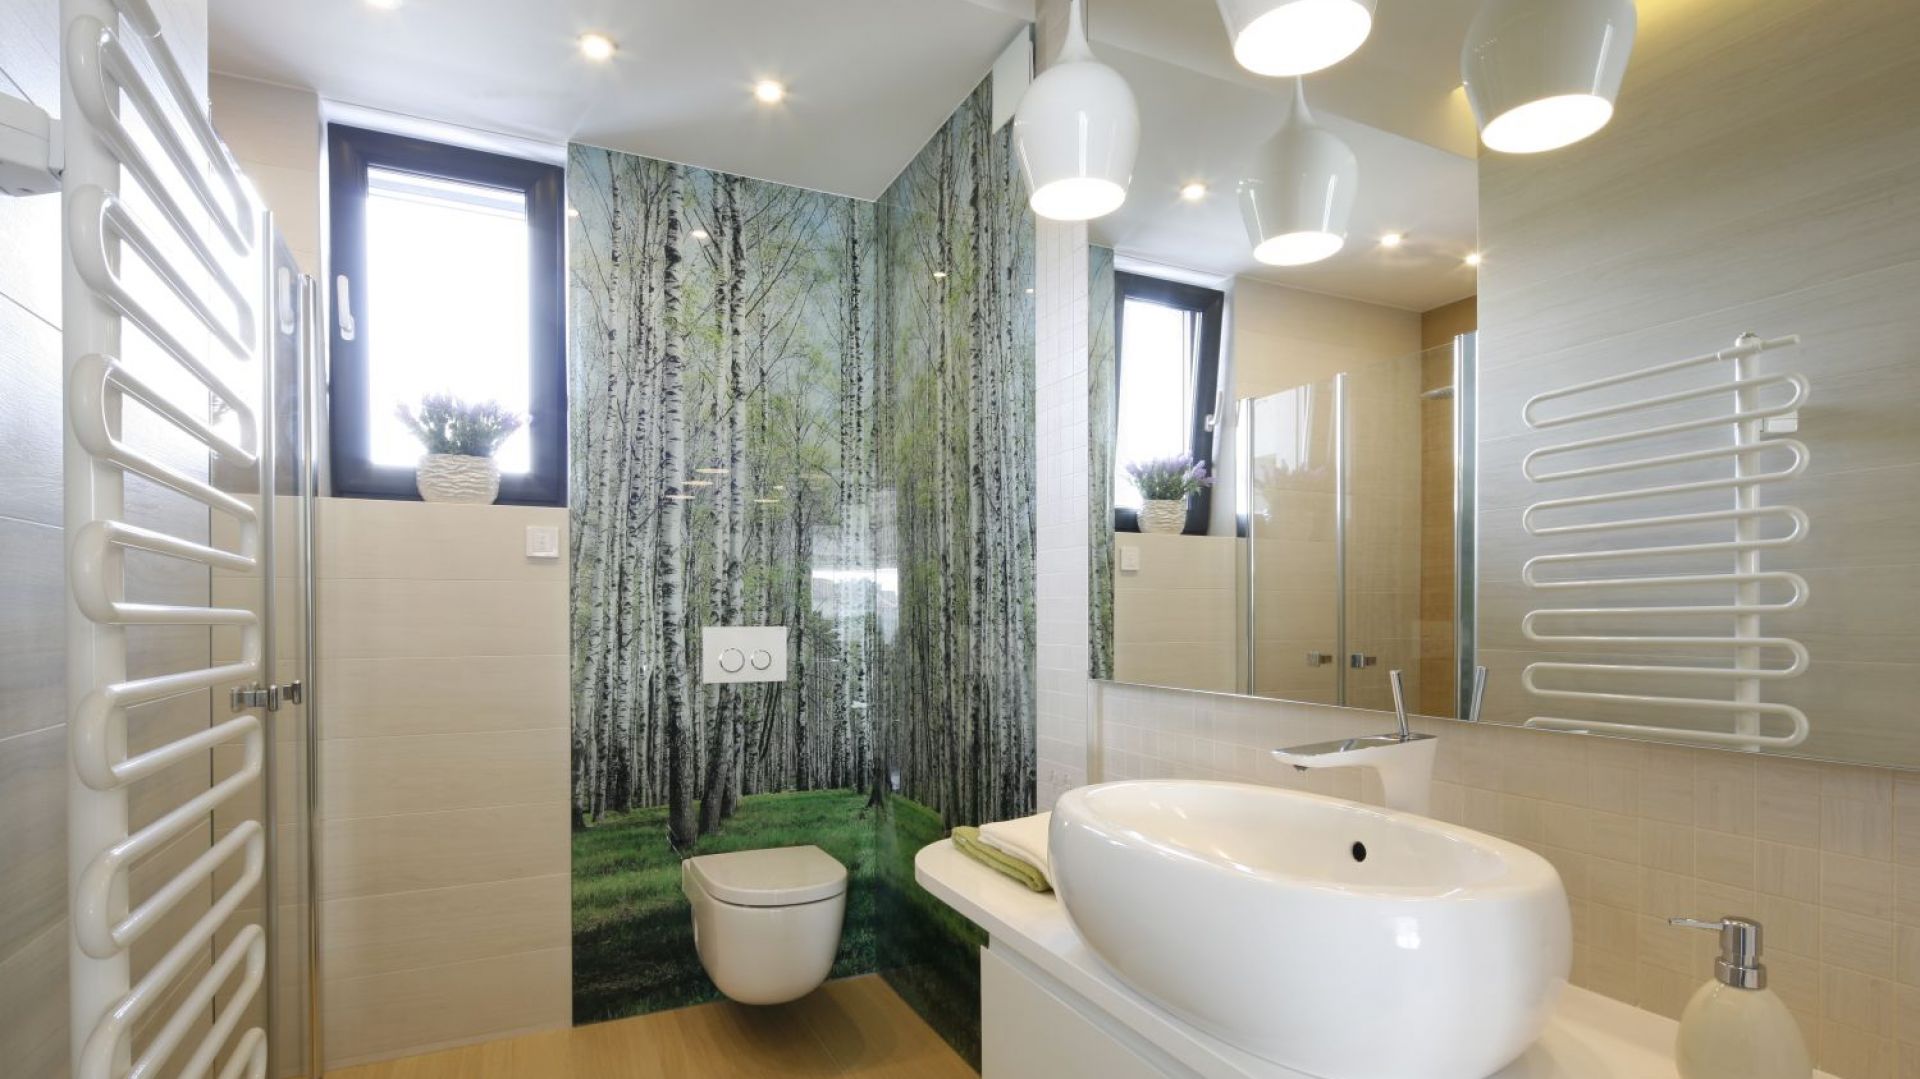 Natura w łazience: 3 pomysły na ścianę z motywem leśnym